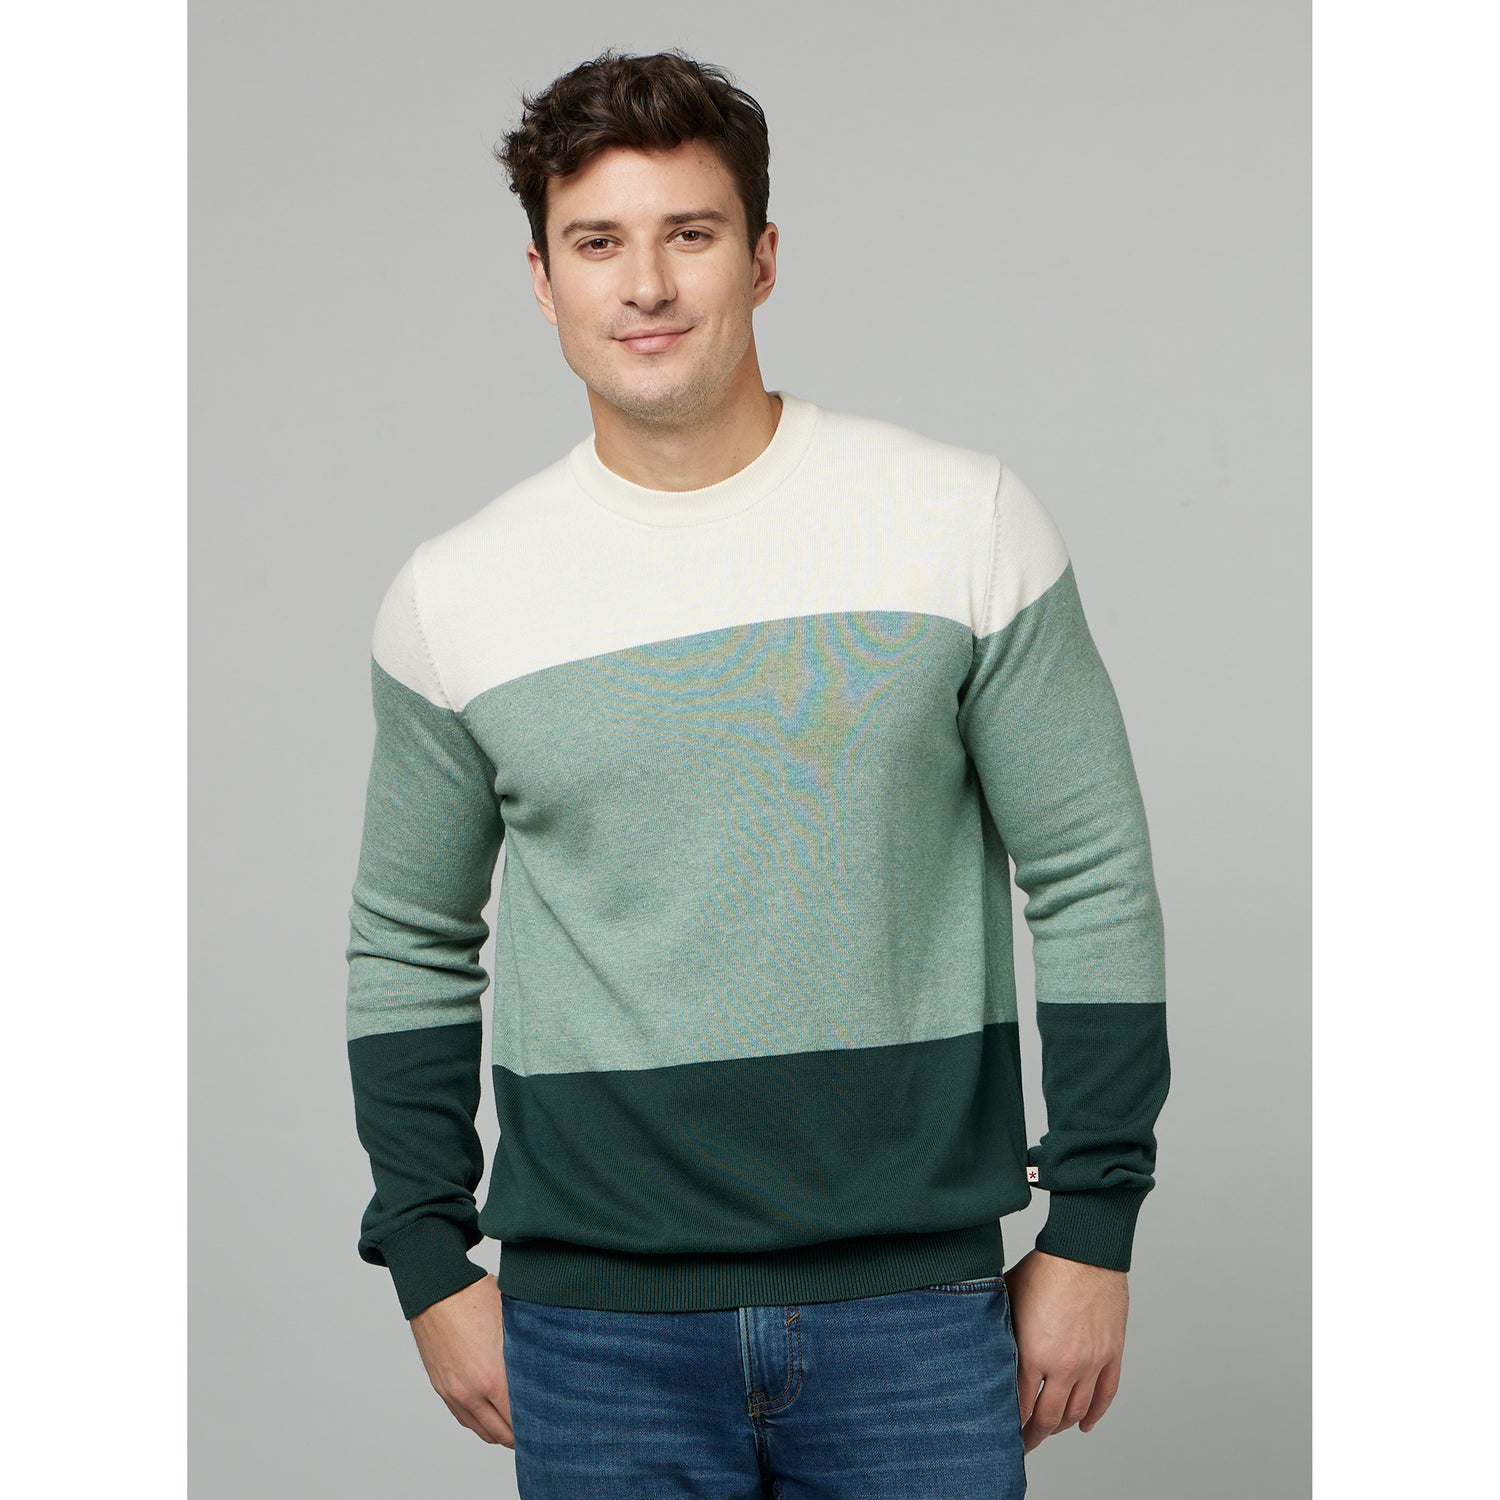 Dark Green Colourblocked Long Sleeves Pullover Sweatshirt (FERAIN)